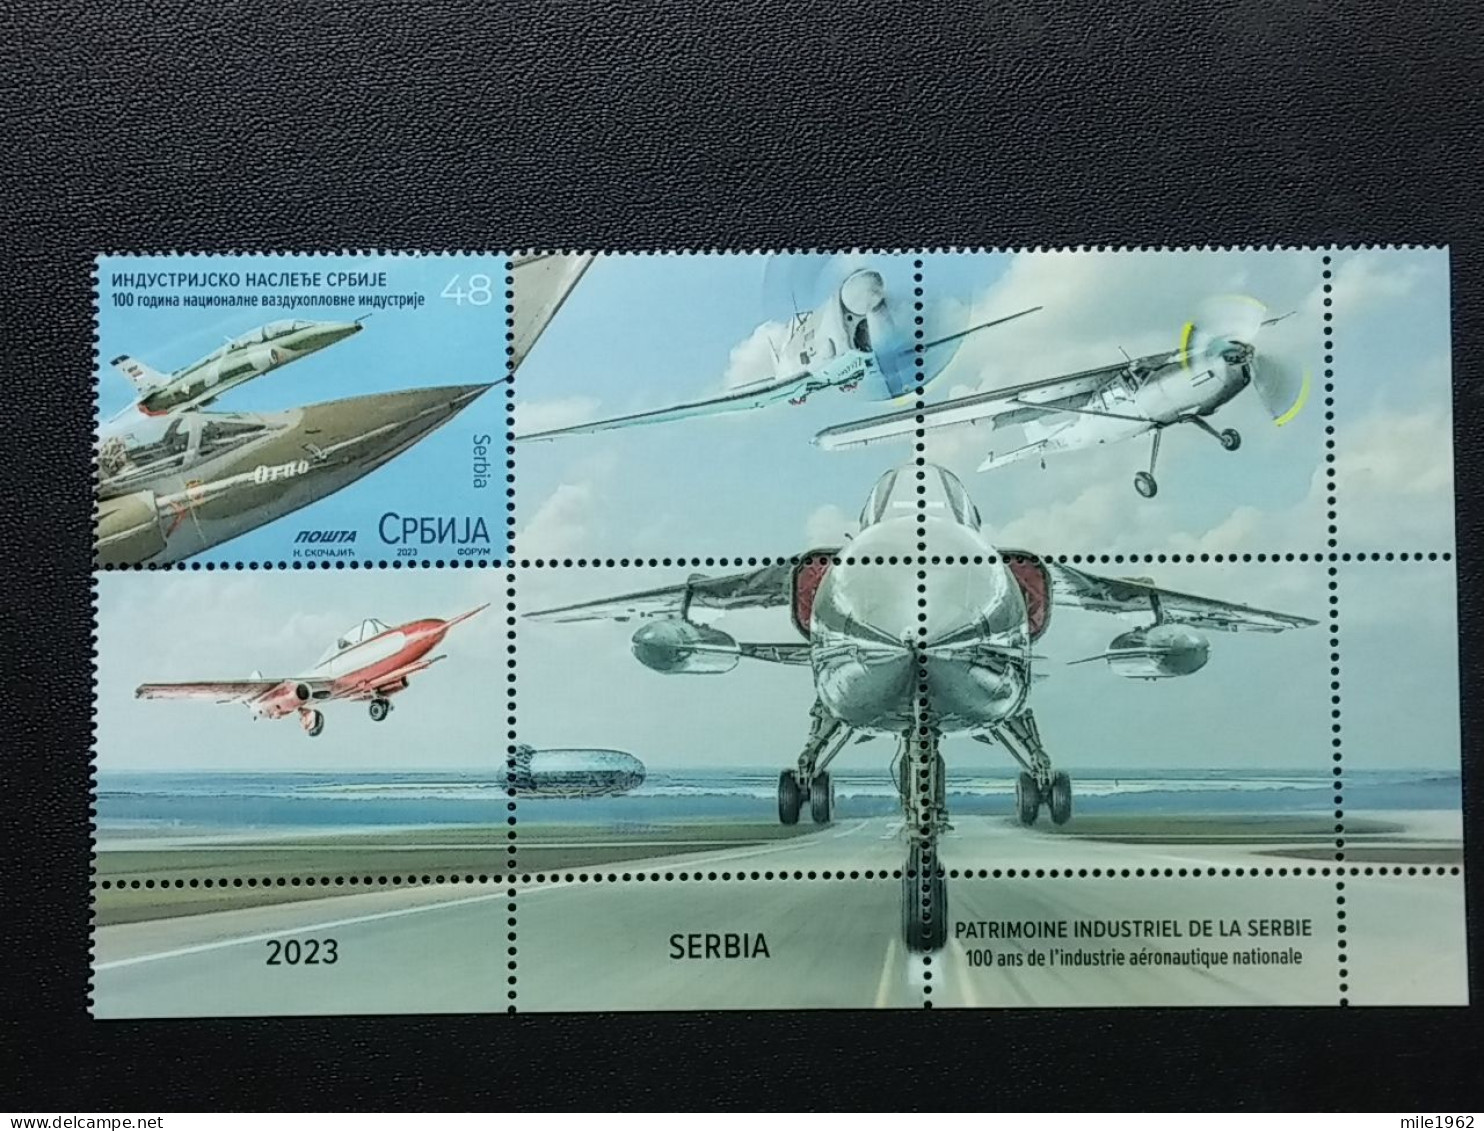 Stamp 3-15 - Serbia 2023 - VIGNETTE + Stamp - Industrial Heritage Of Serbia, Military Industry, Avion, Plane, Avio - Serbien